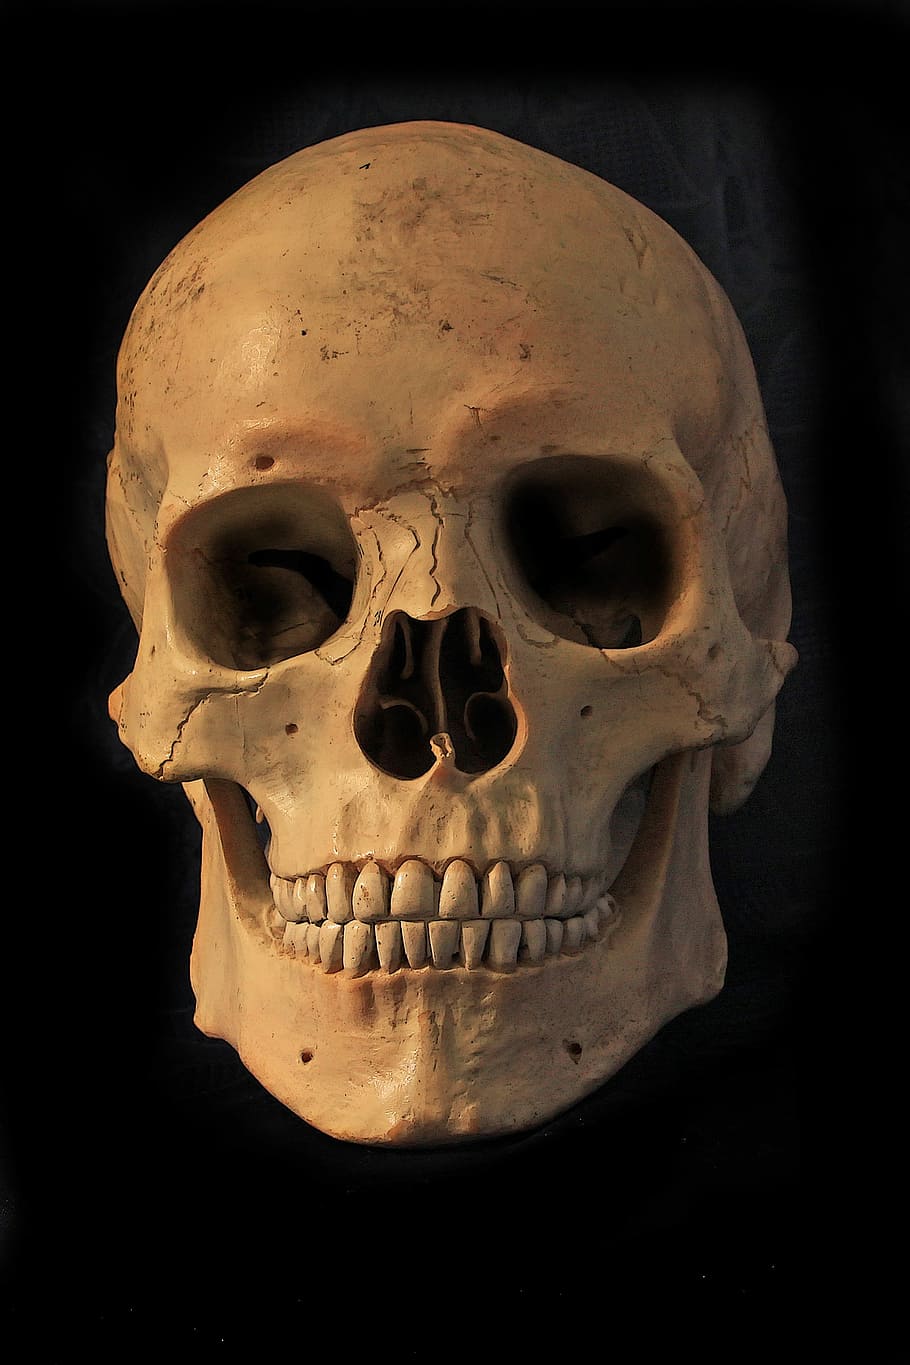 crânio branco, crânio humano, crânio e ossos cruzados, esqueleto, crânio, osso, osso do crânio, mortal, morto, morte